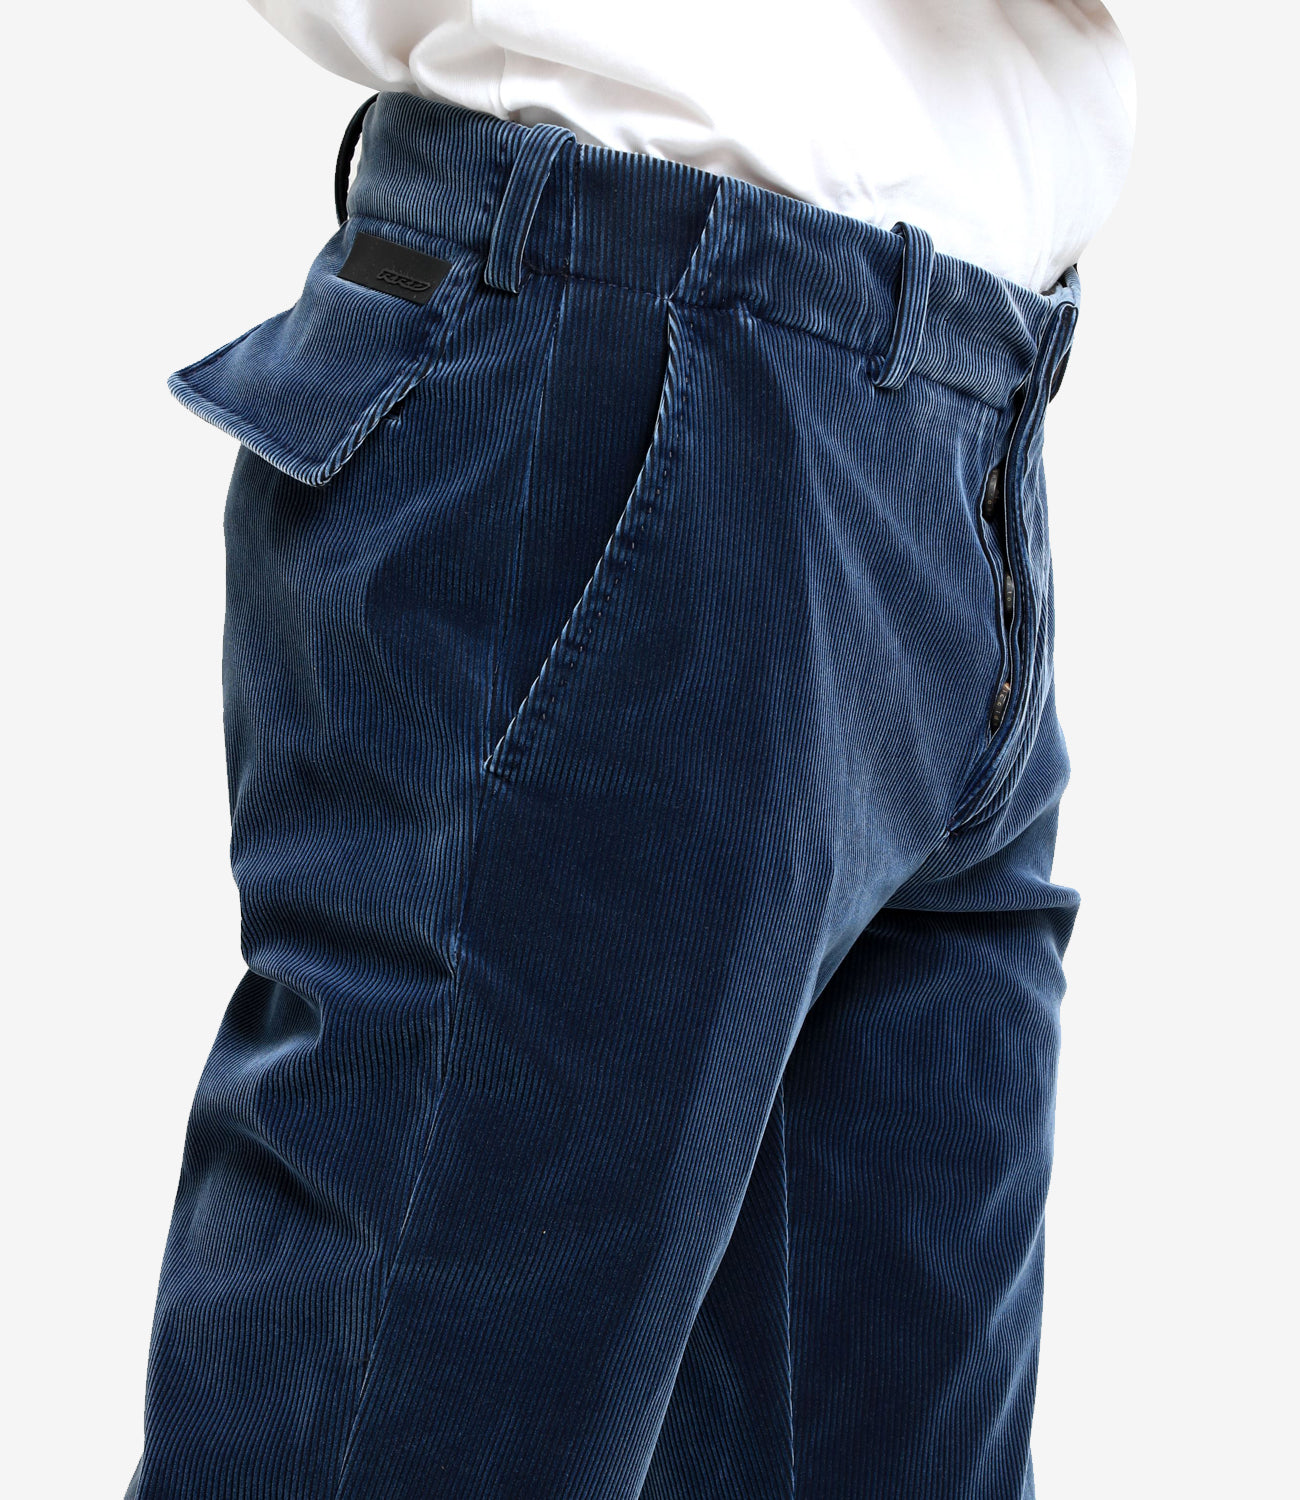 RRD | Pantalonte techno velvet 1000 chino Blu